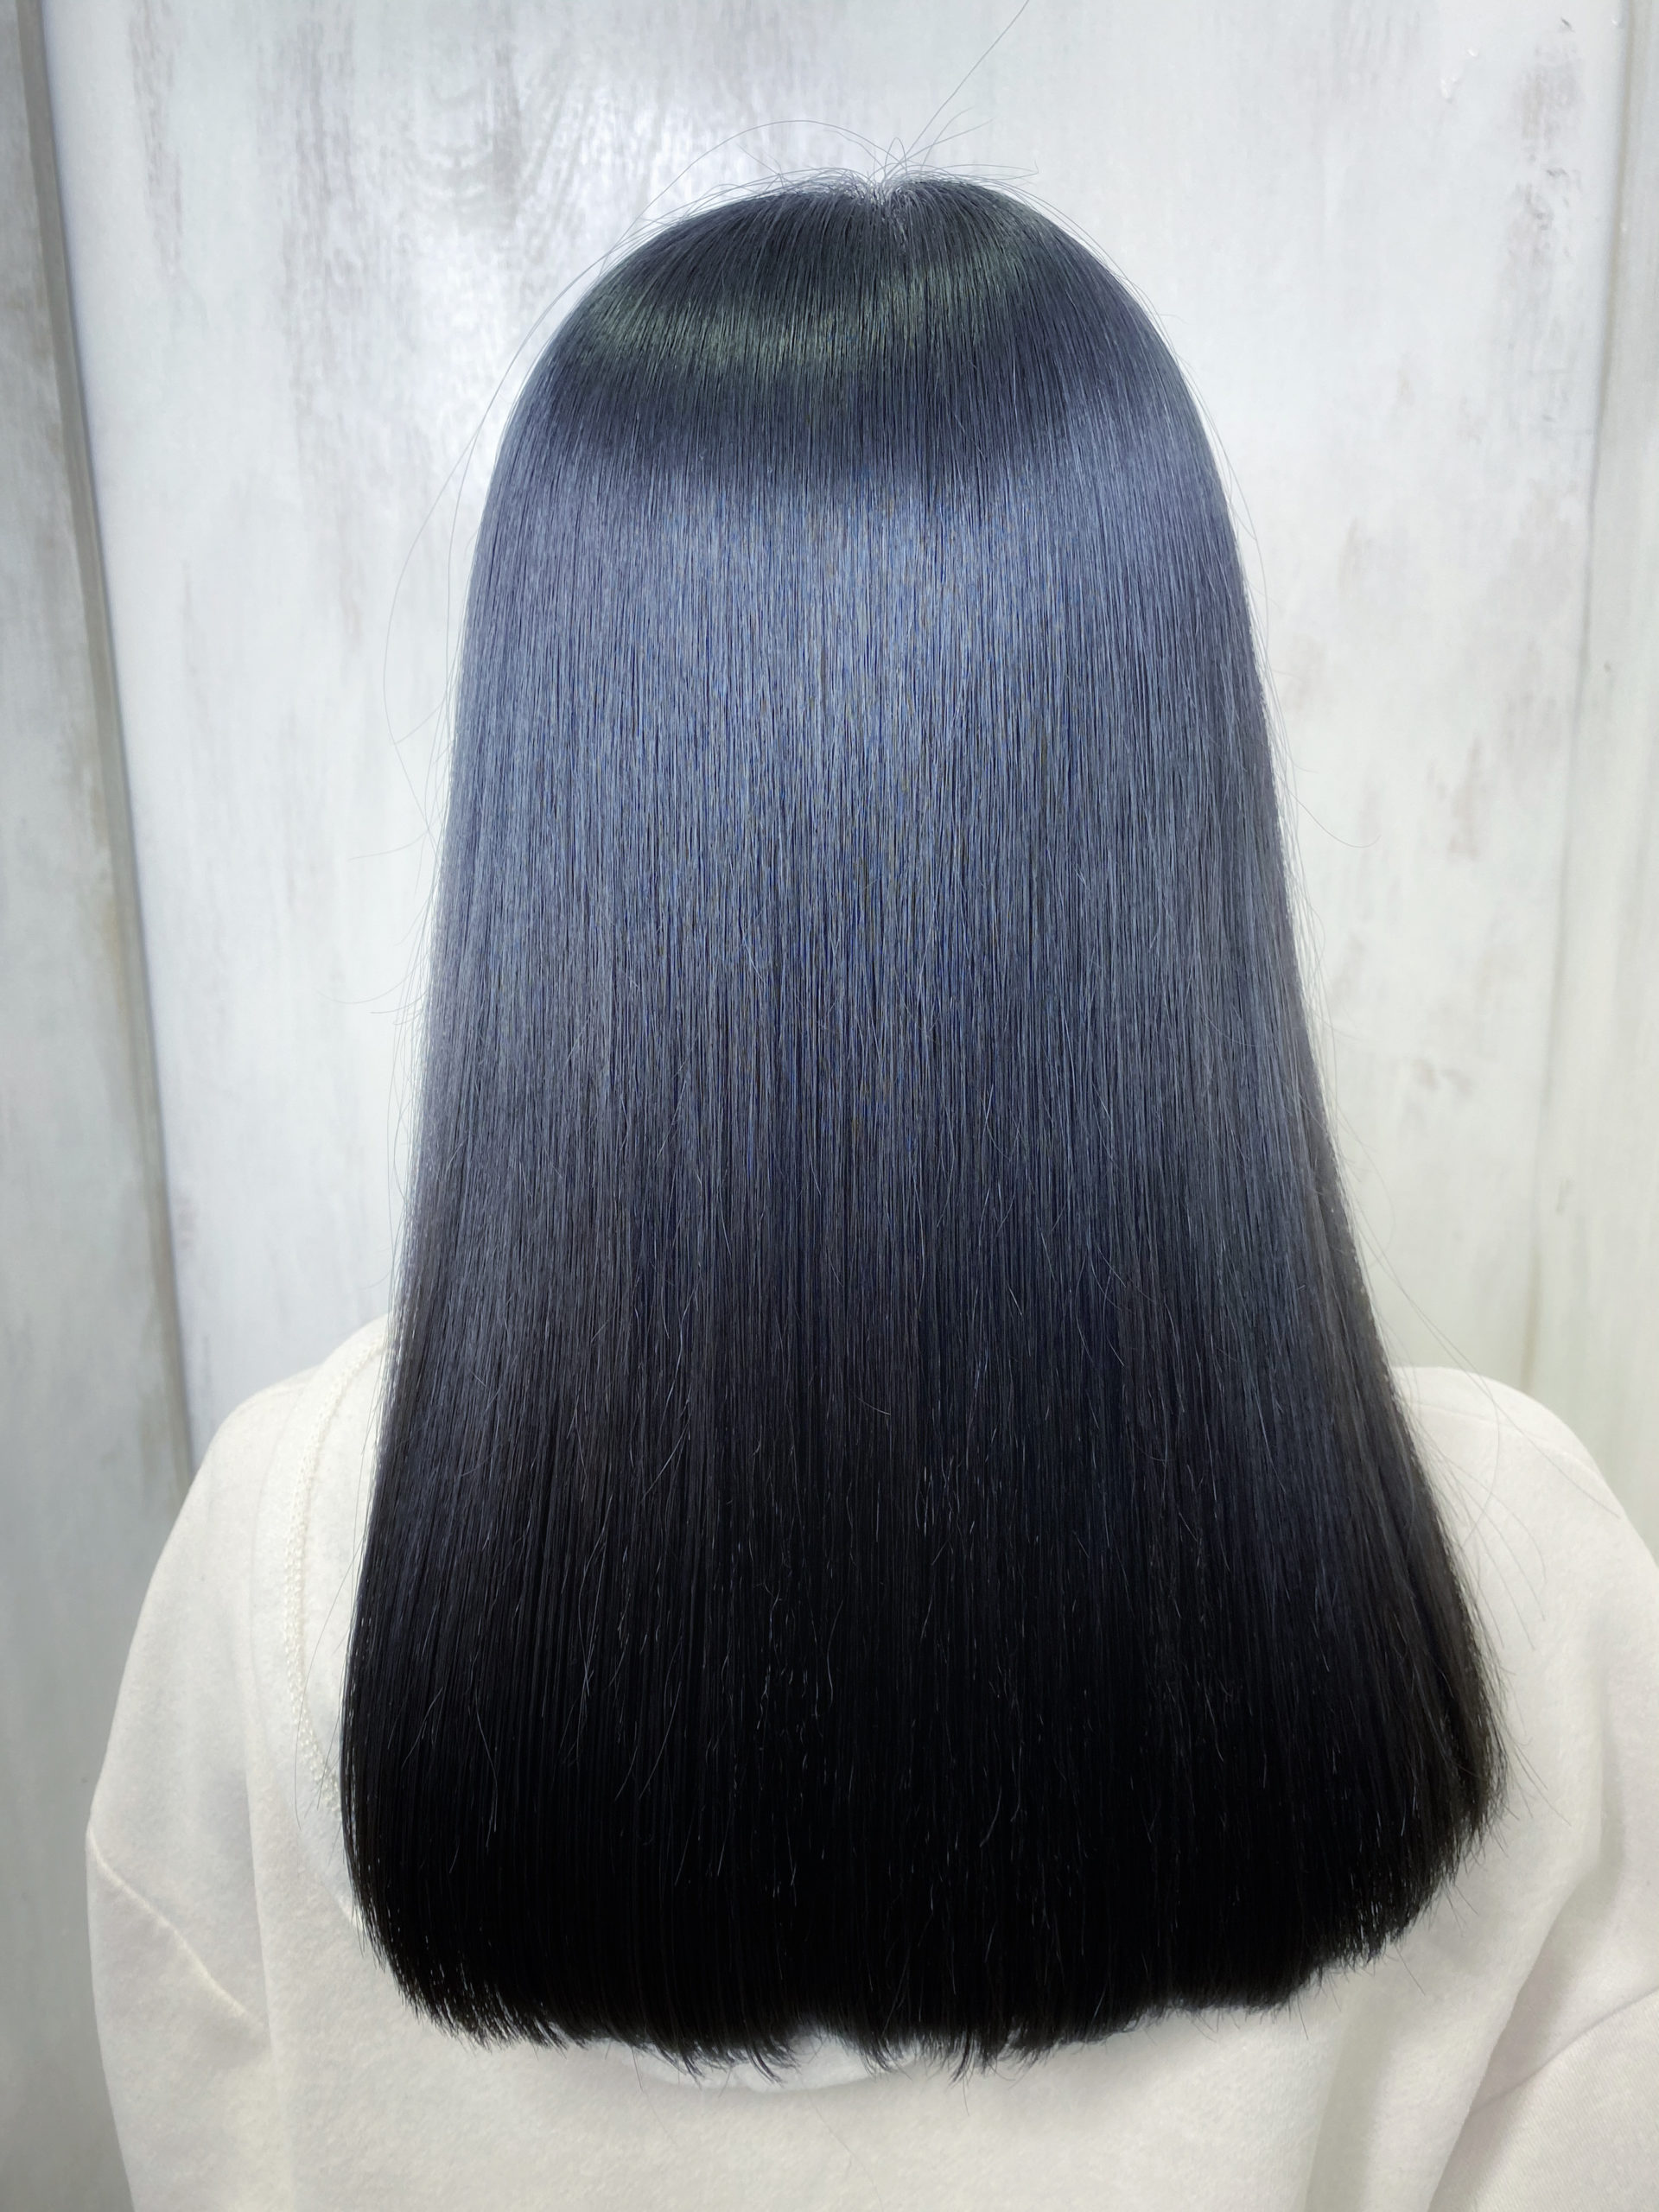 ジュエリーシステム×LULUトリートメント×縮毛矯正で輝く艶髪。原宿・表参道『髪のお悩みを解決するヘアケア美容師の挑戦』